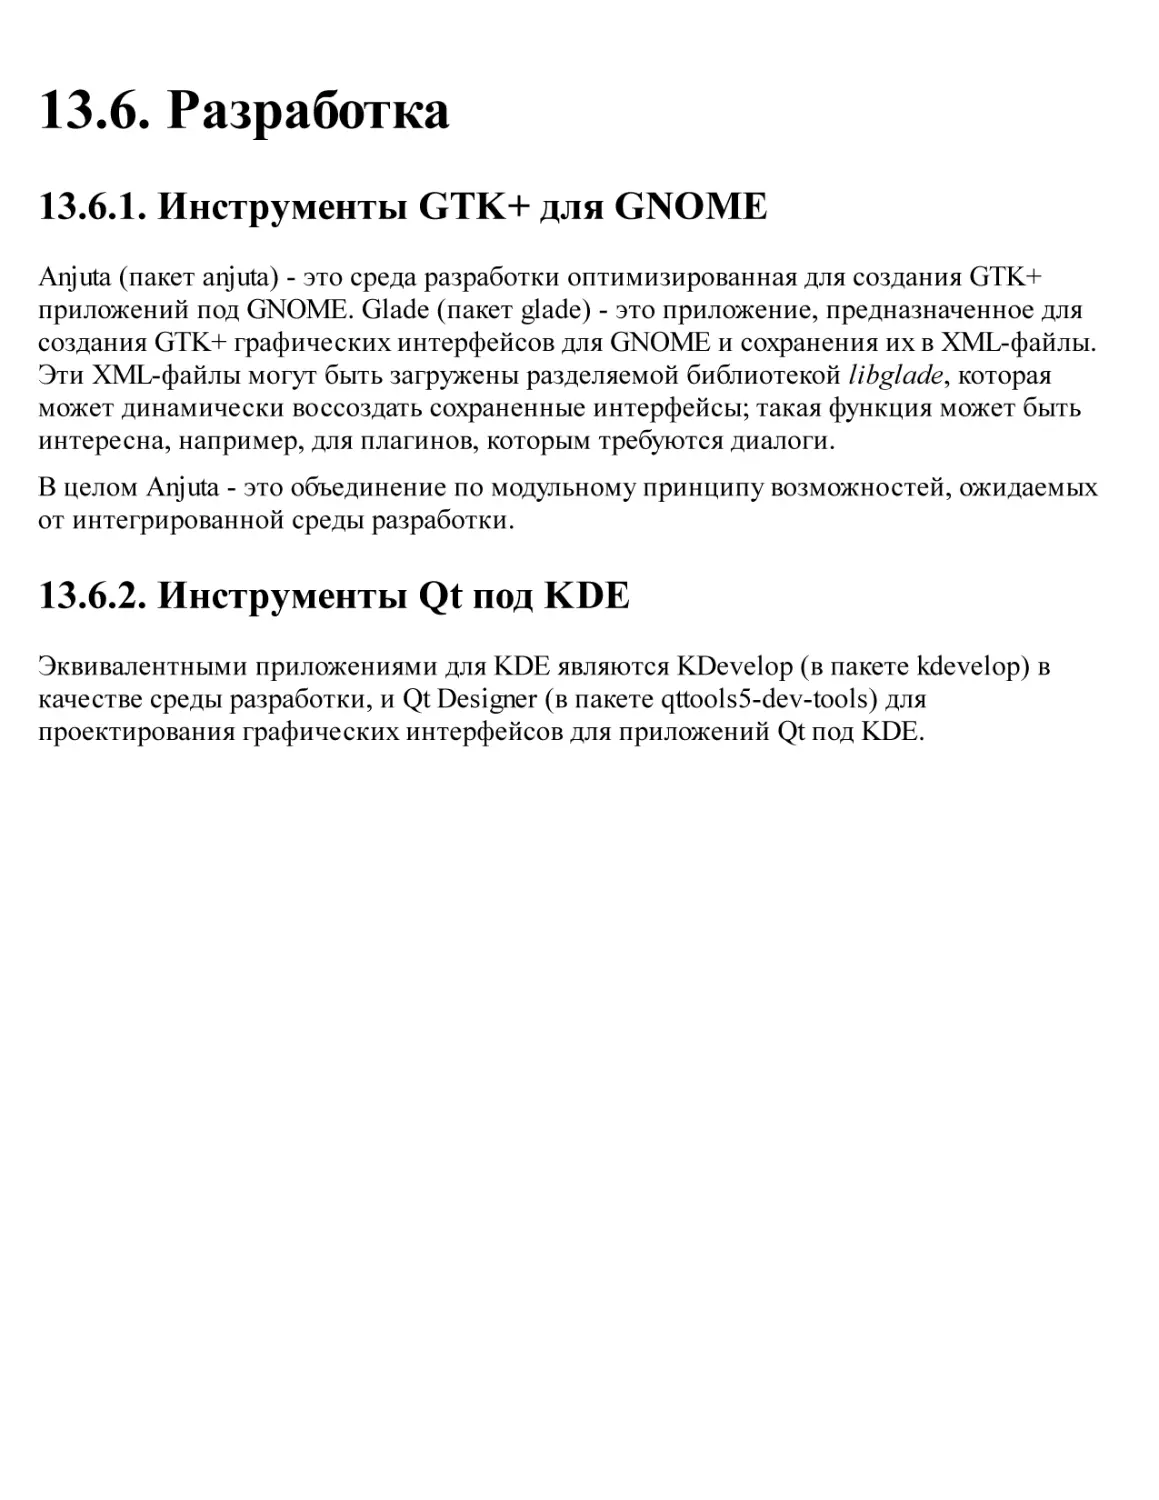 13.6. Разработка
13.6.1. Инструменты GTK+ для GNOME
13.6.2. Инструменты Qt под KDE